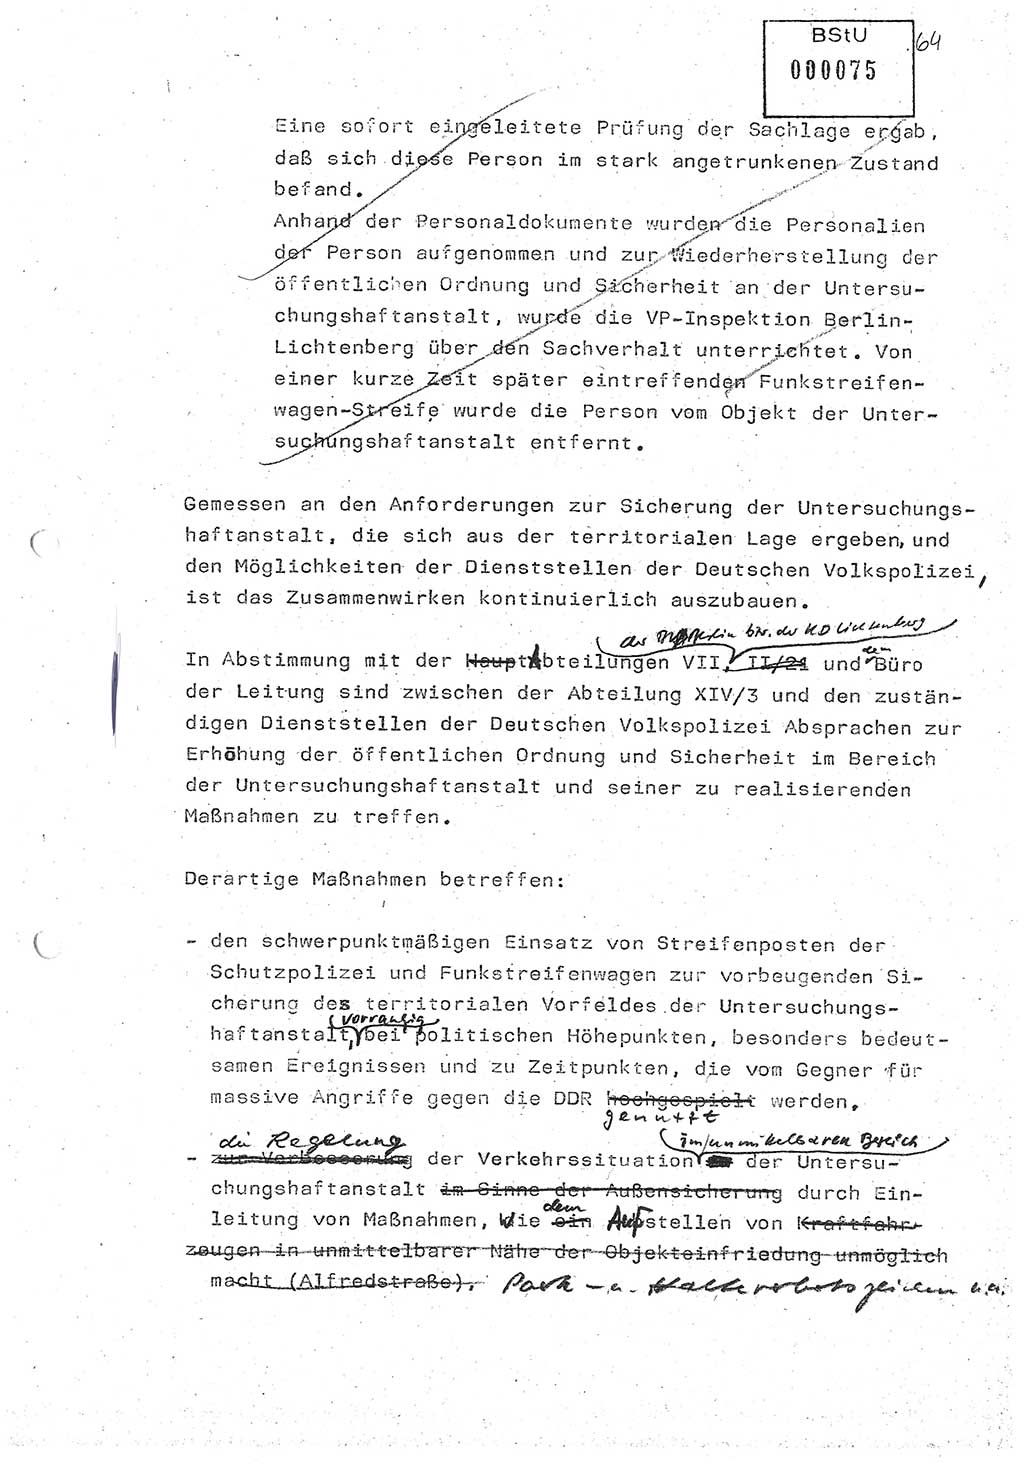 Diplomarbeit (Entwurf) Oberleutnant Peter Parke (Abt. ⅩⅣ), Ministerium für Staatssicherheit (MfS) [Deutsche Demokratische Republik (DDR)], Juristische Hochschule (JHS), Geheime Verschlußsache (GVS) o001-98/86, Potsdam 1986, Seite 75 (Dipl.-Arb. MfS DDR JHS GVS o001-98/86 1986, S. 75)